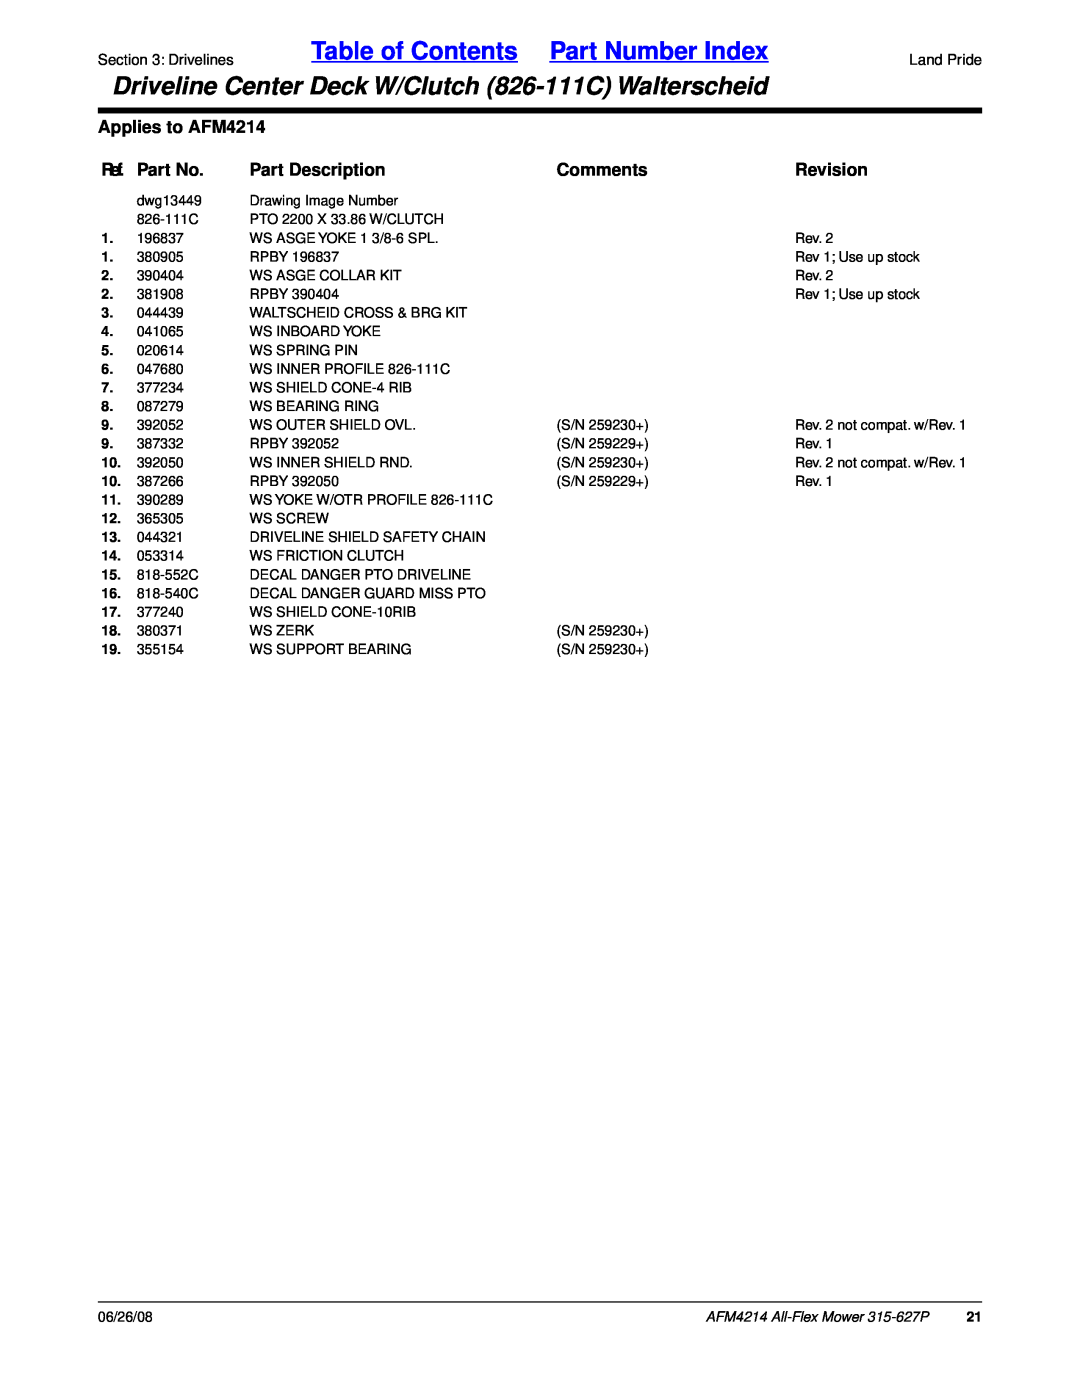 Land Pride Table of Contents Part Number Index, Applies to AFM4214, Ref. Part No, Part Description, Comments, Revision 